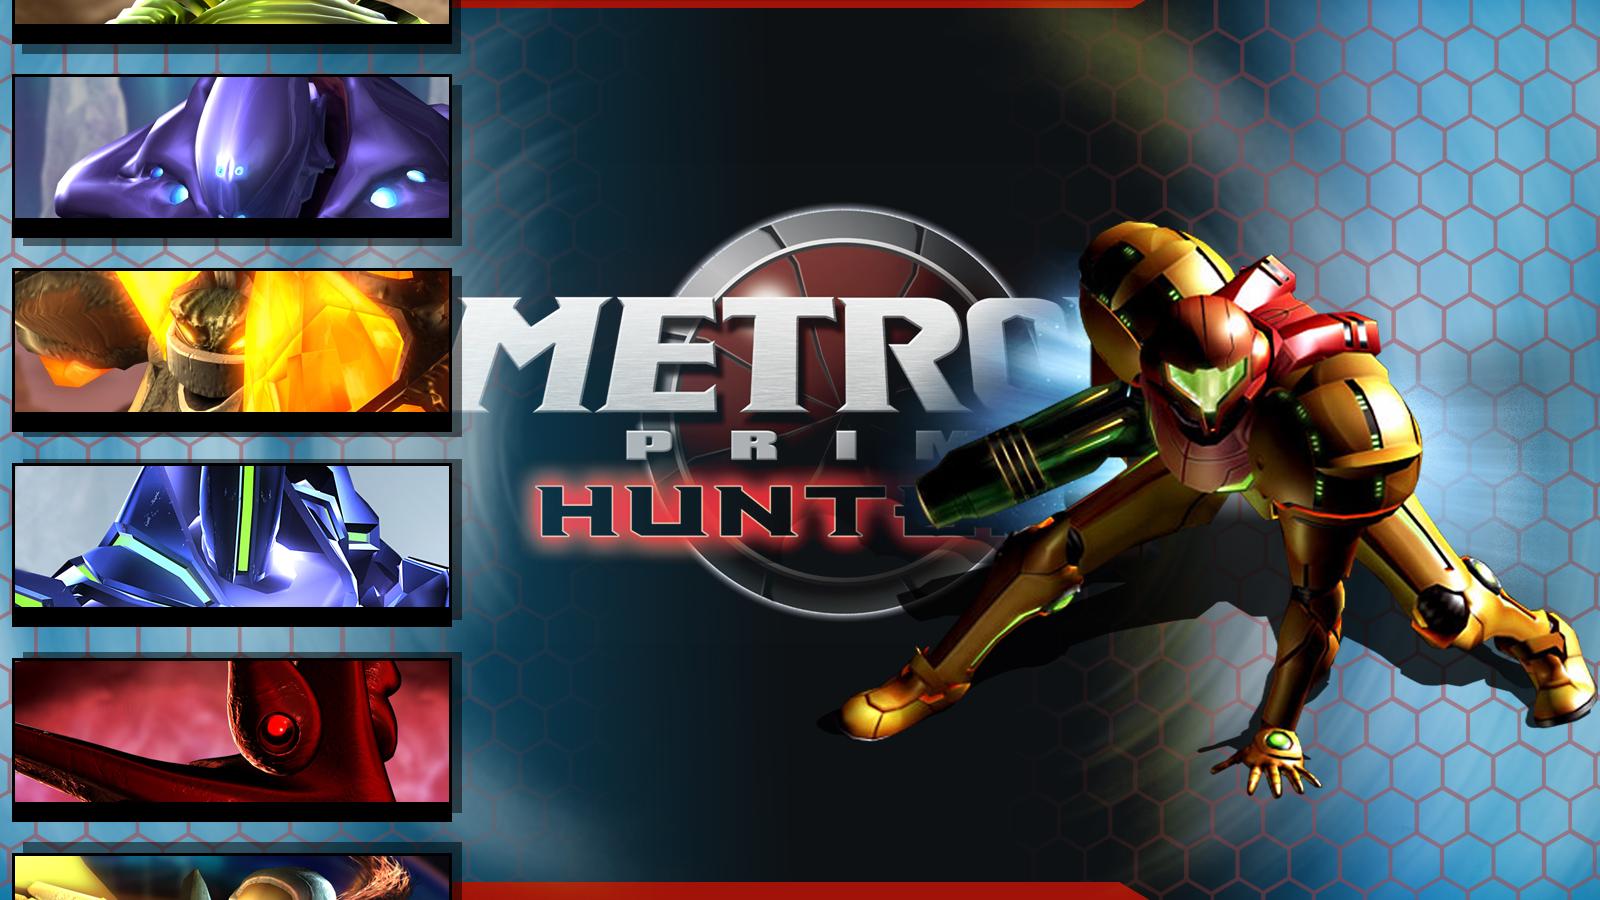 Metroid Prime Hunters HD Wallpaper General